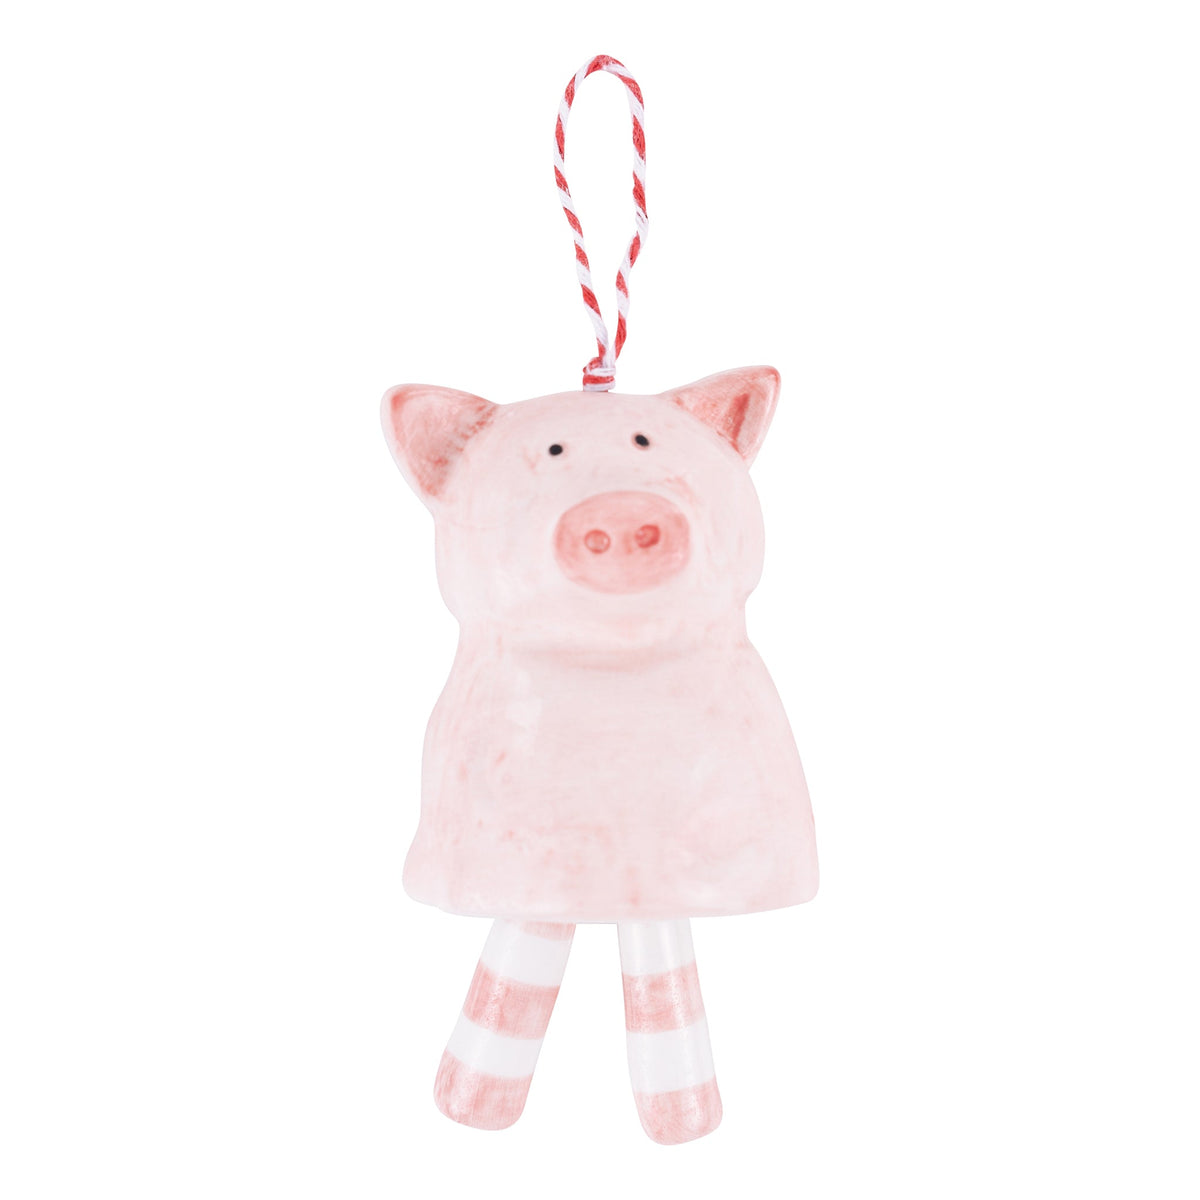 Pig Ornament